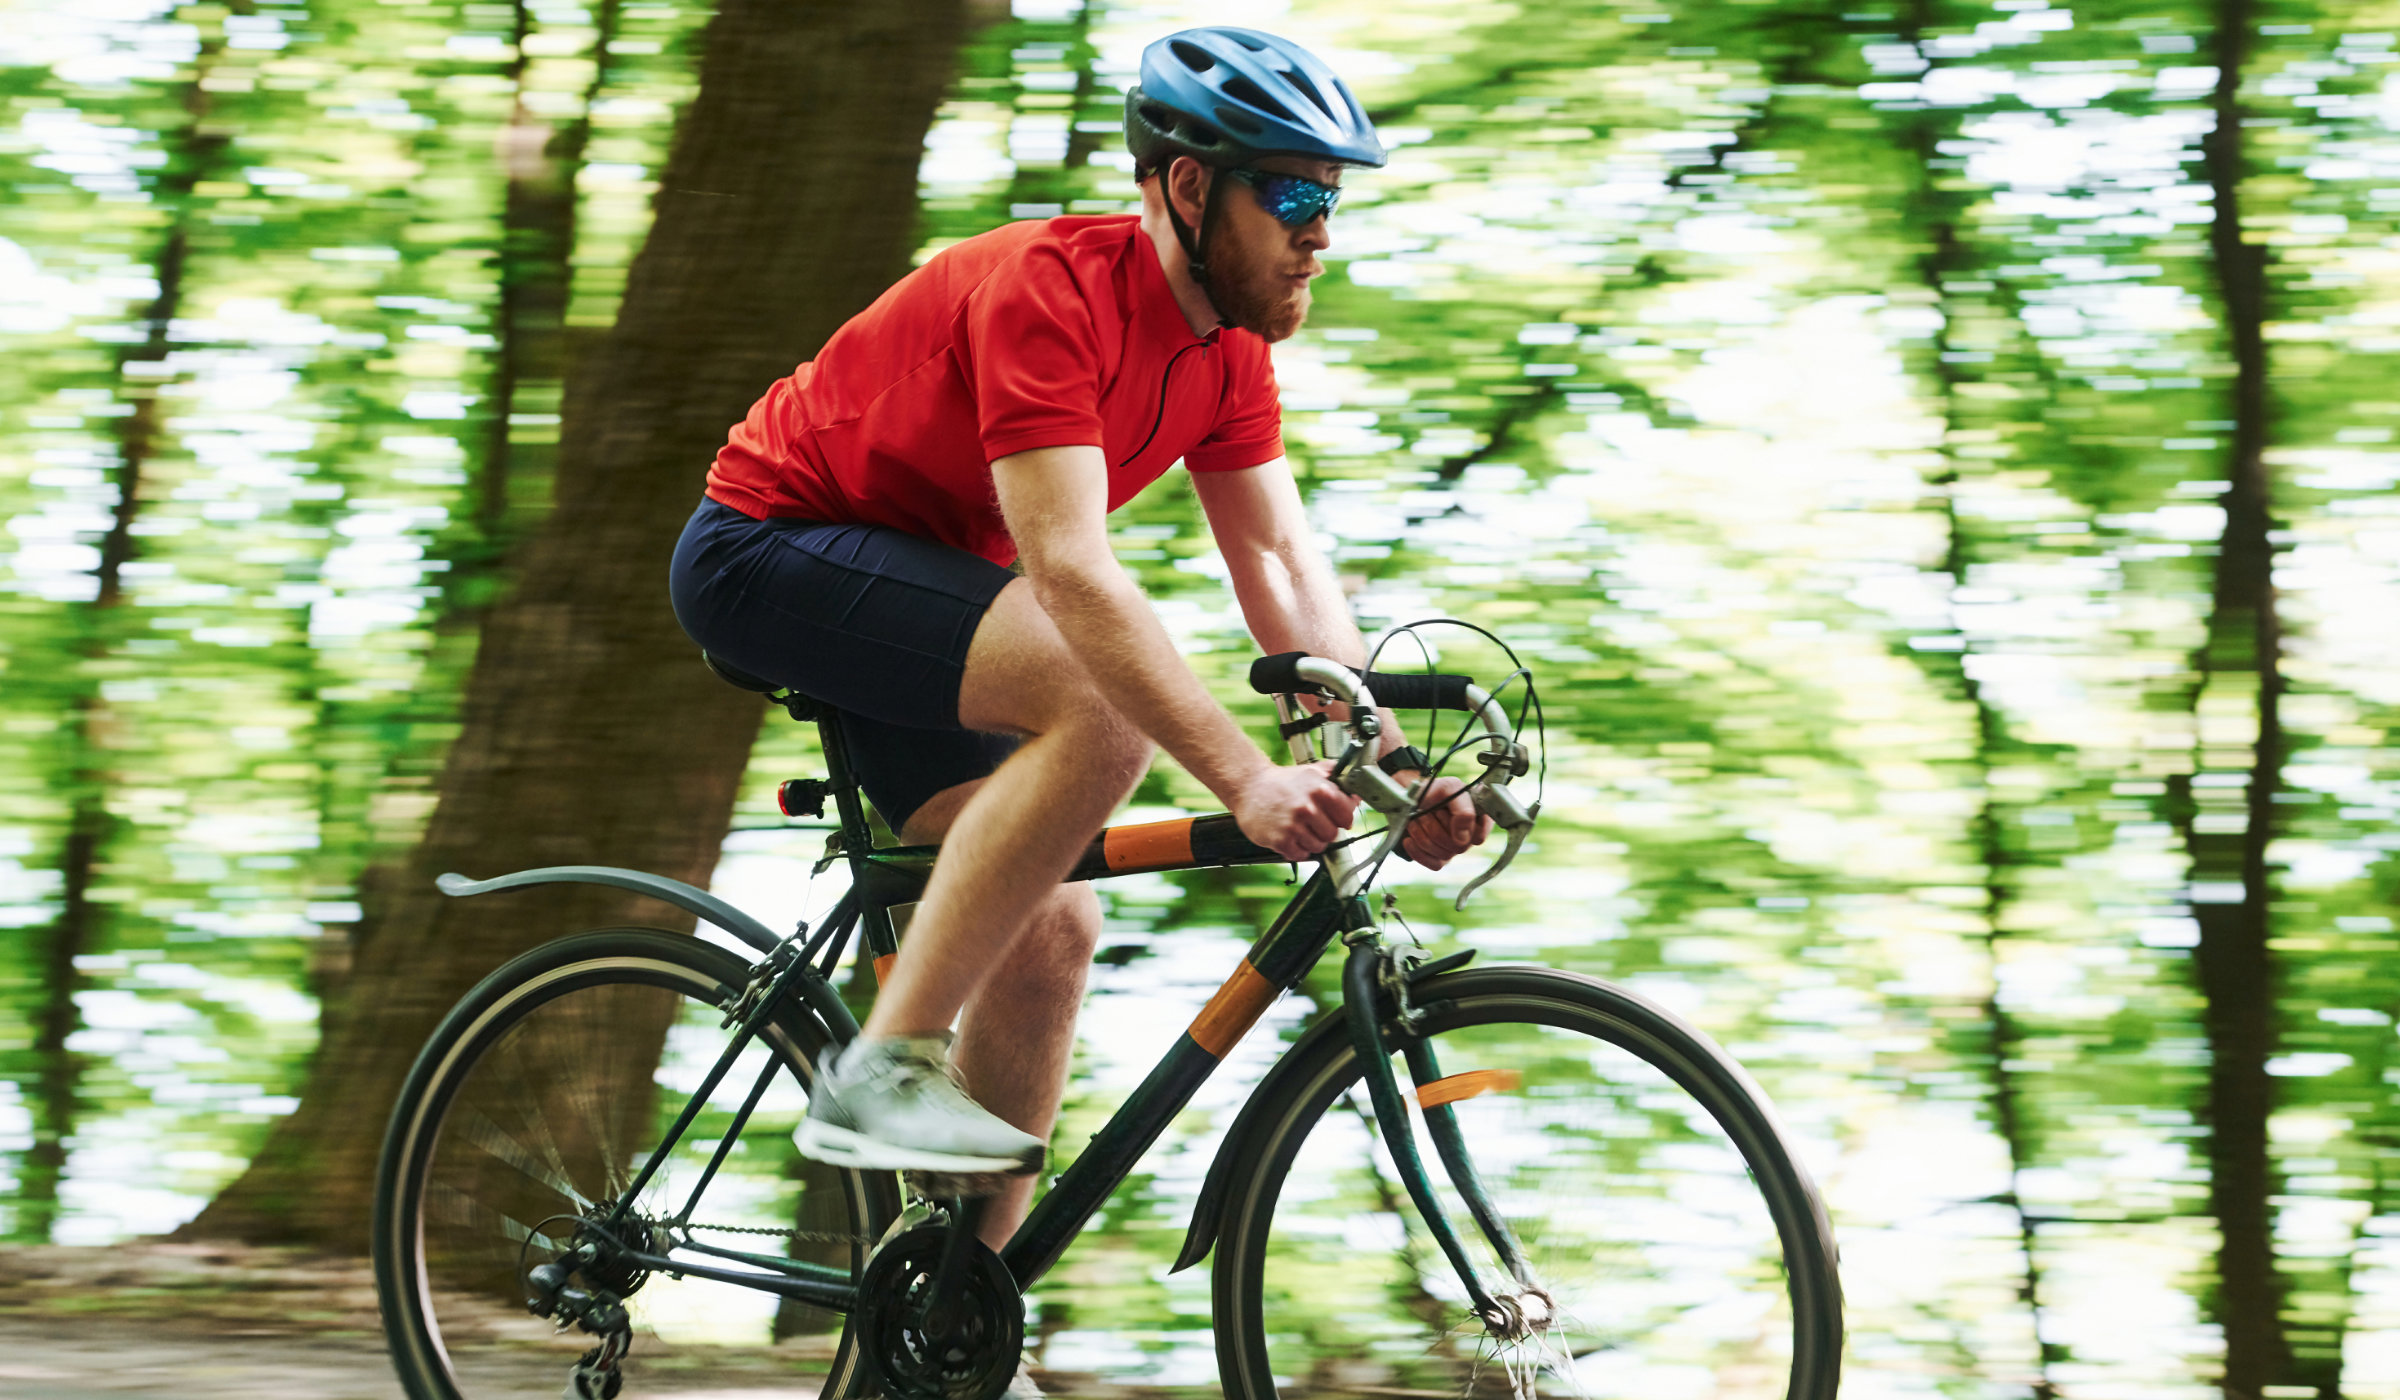 Break a sweat biking along the many acres of trails